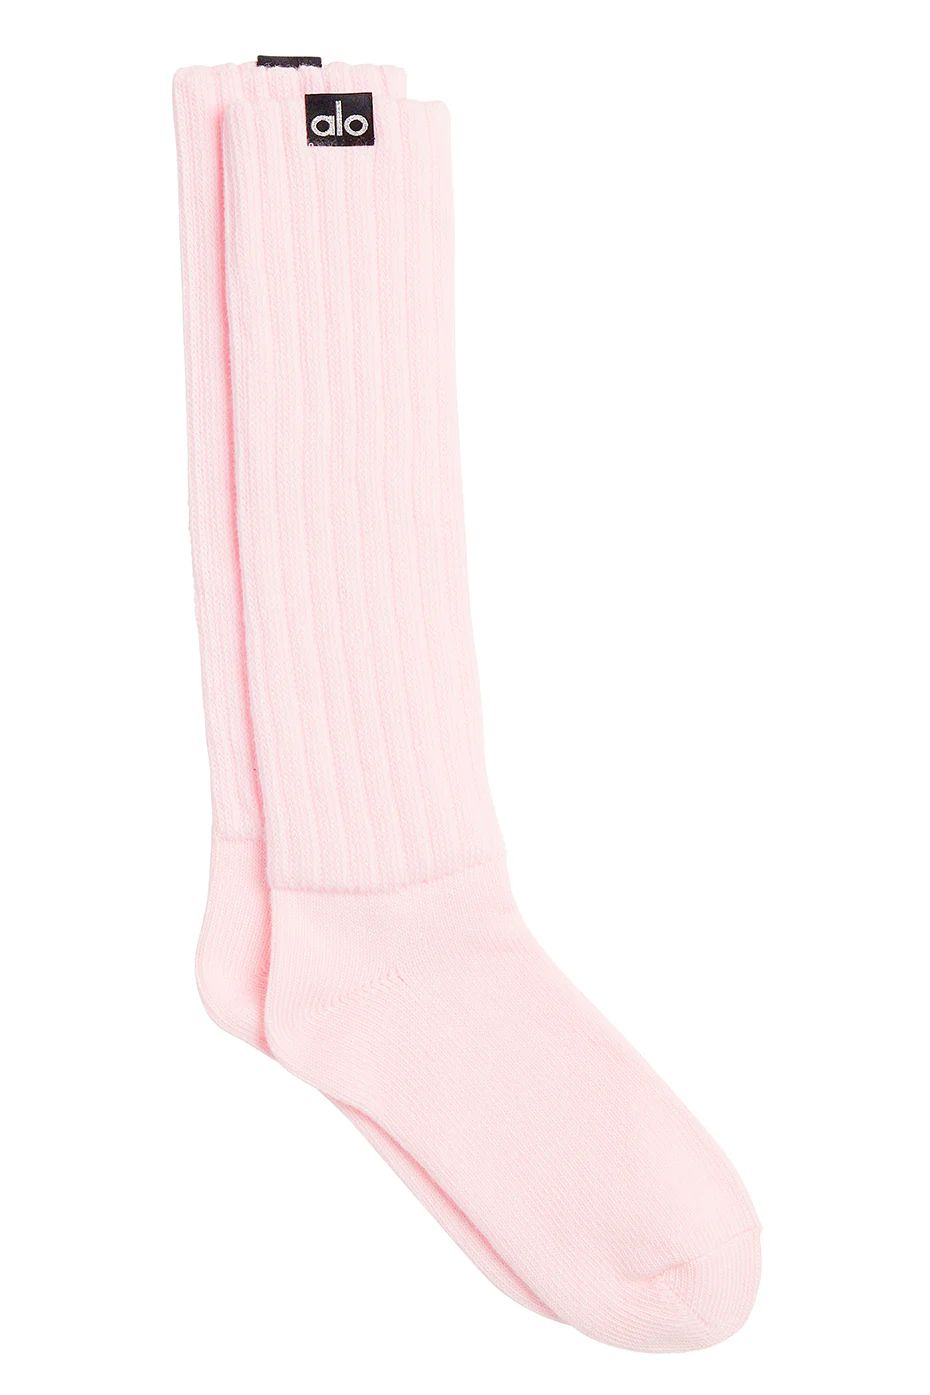 Alo YogaÅ½ | Women's Scrunch Socks in Powder Pink, Size: S/M (5-7.5) | Alo Yoga